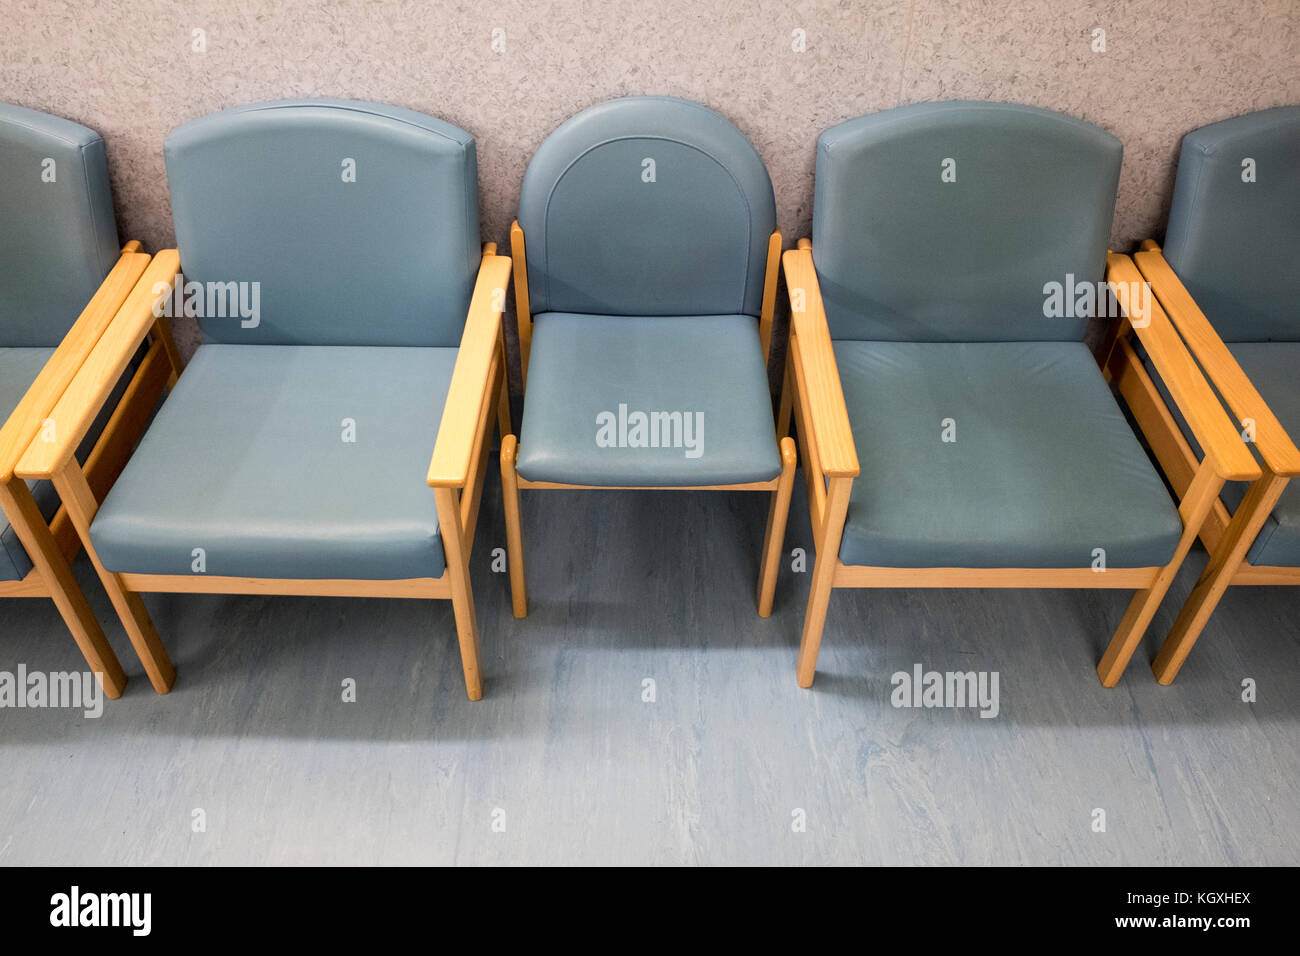 Blaue Stuhle In Einem Leeren Wartezimmer Einen Kleinen Stuhl Durch Zwei Grossere Auf Beiden Seiten Gedruckt Werden Stockfotografie Alamy